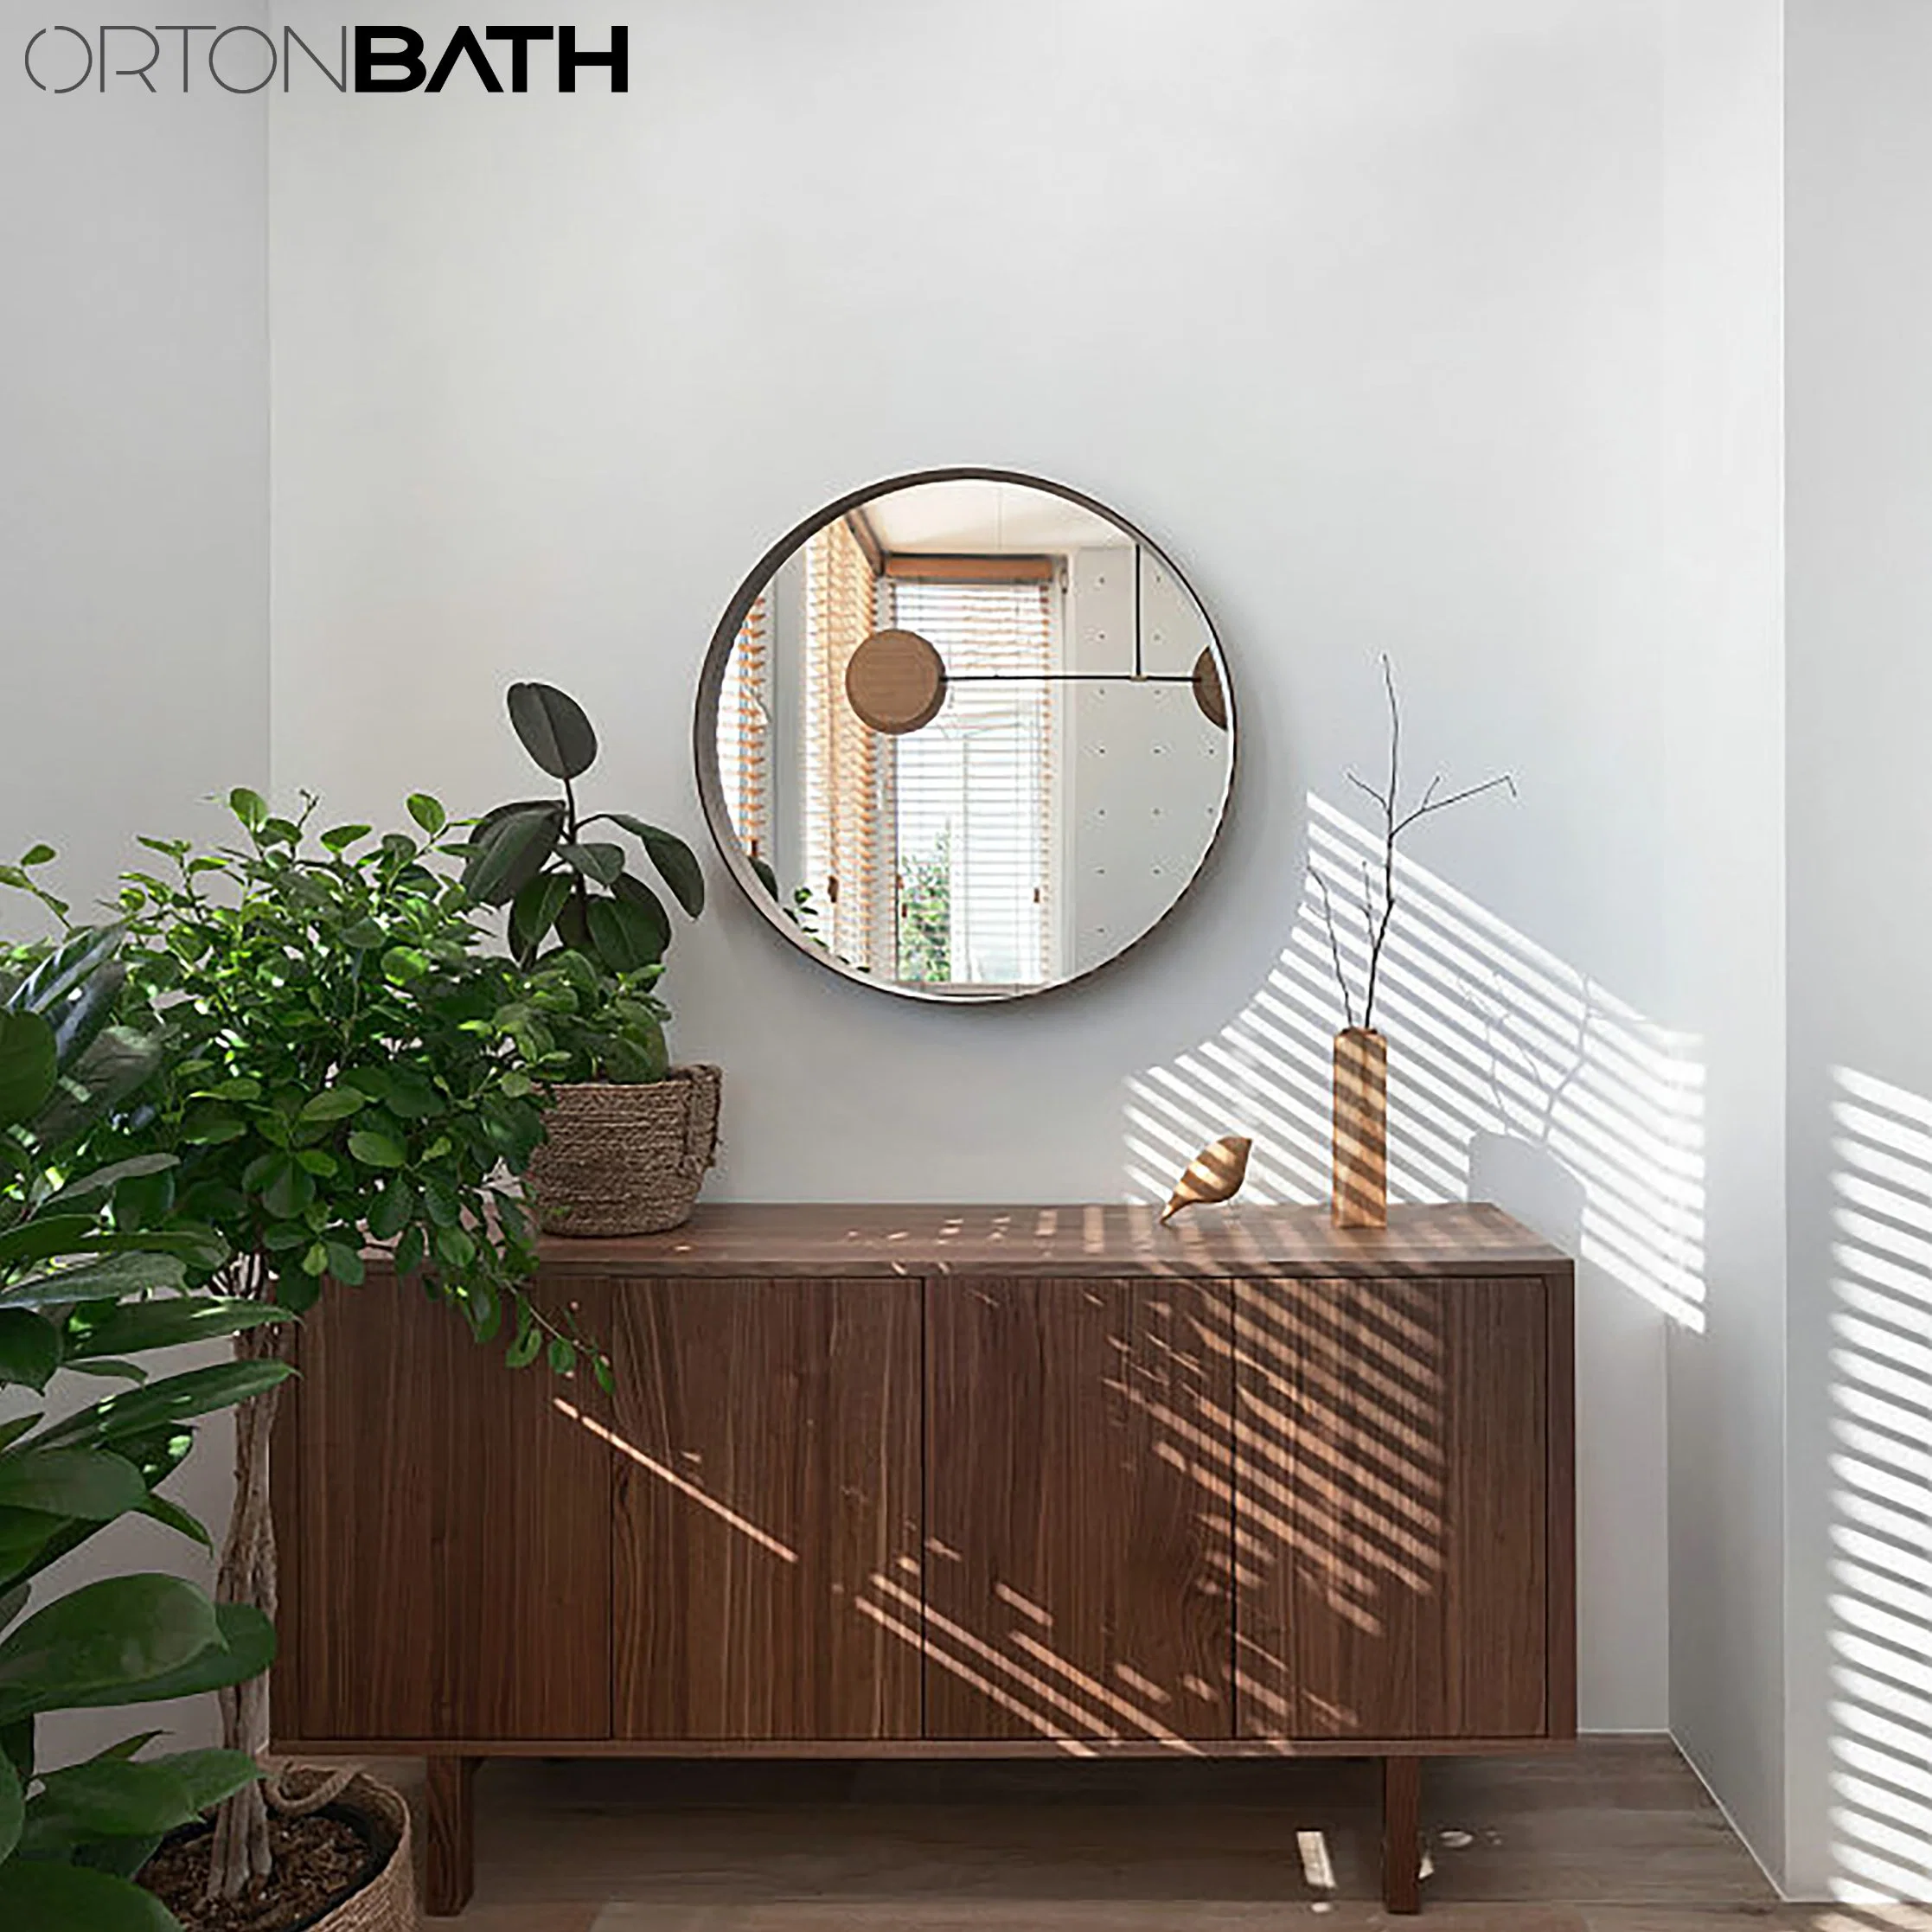 Ronde Ortonbath large cercle de métal or encadrée Bath Accueil Smart monté sur un mur non-voyant concepteur de la salle de bains Art miroir de rétroviseur